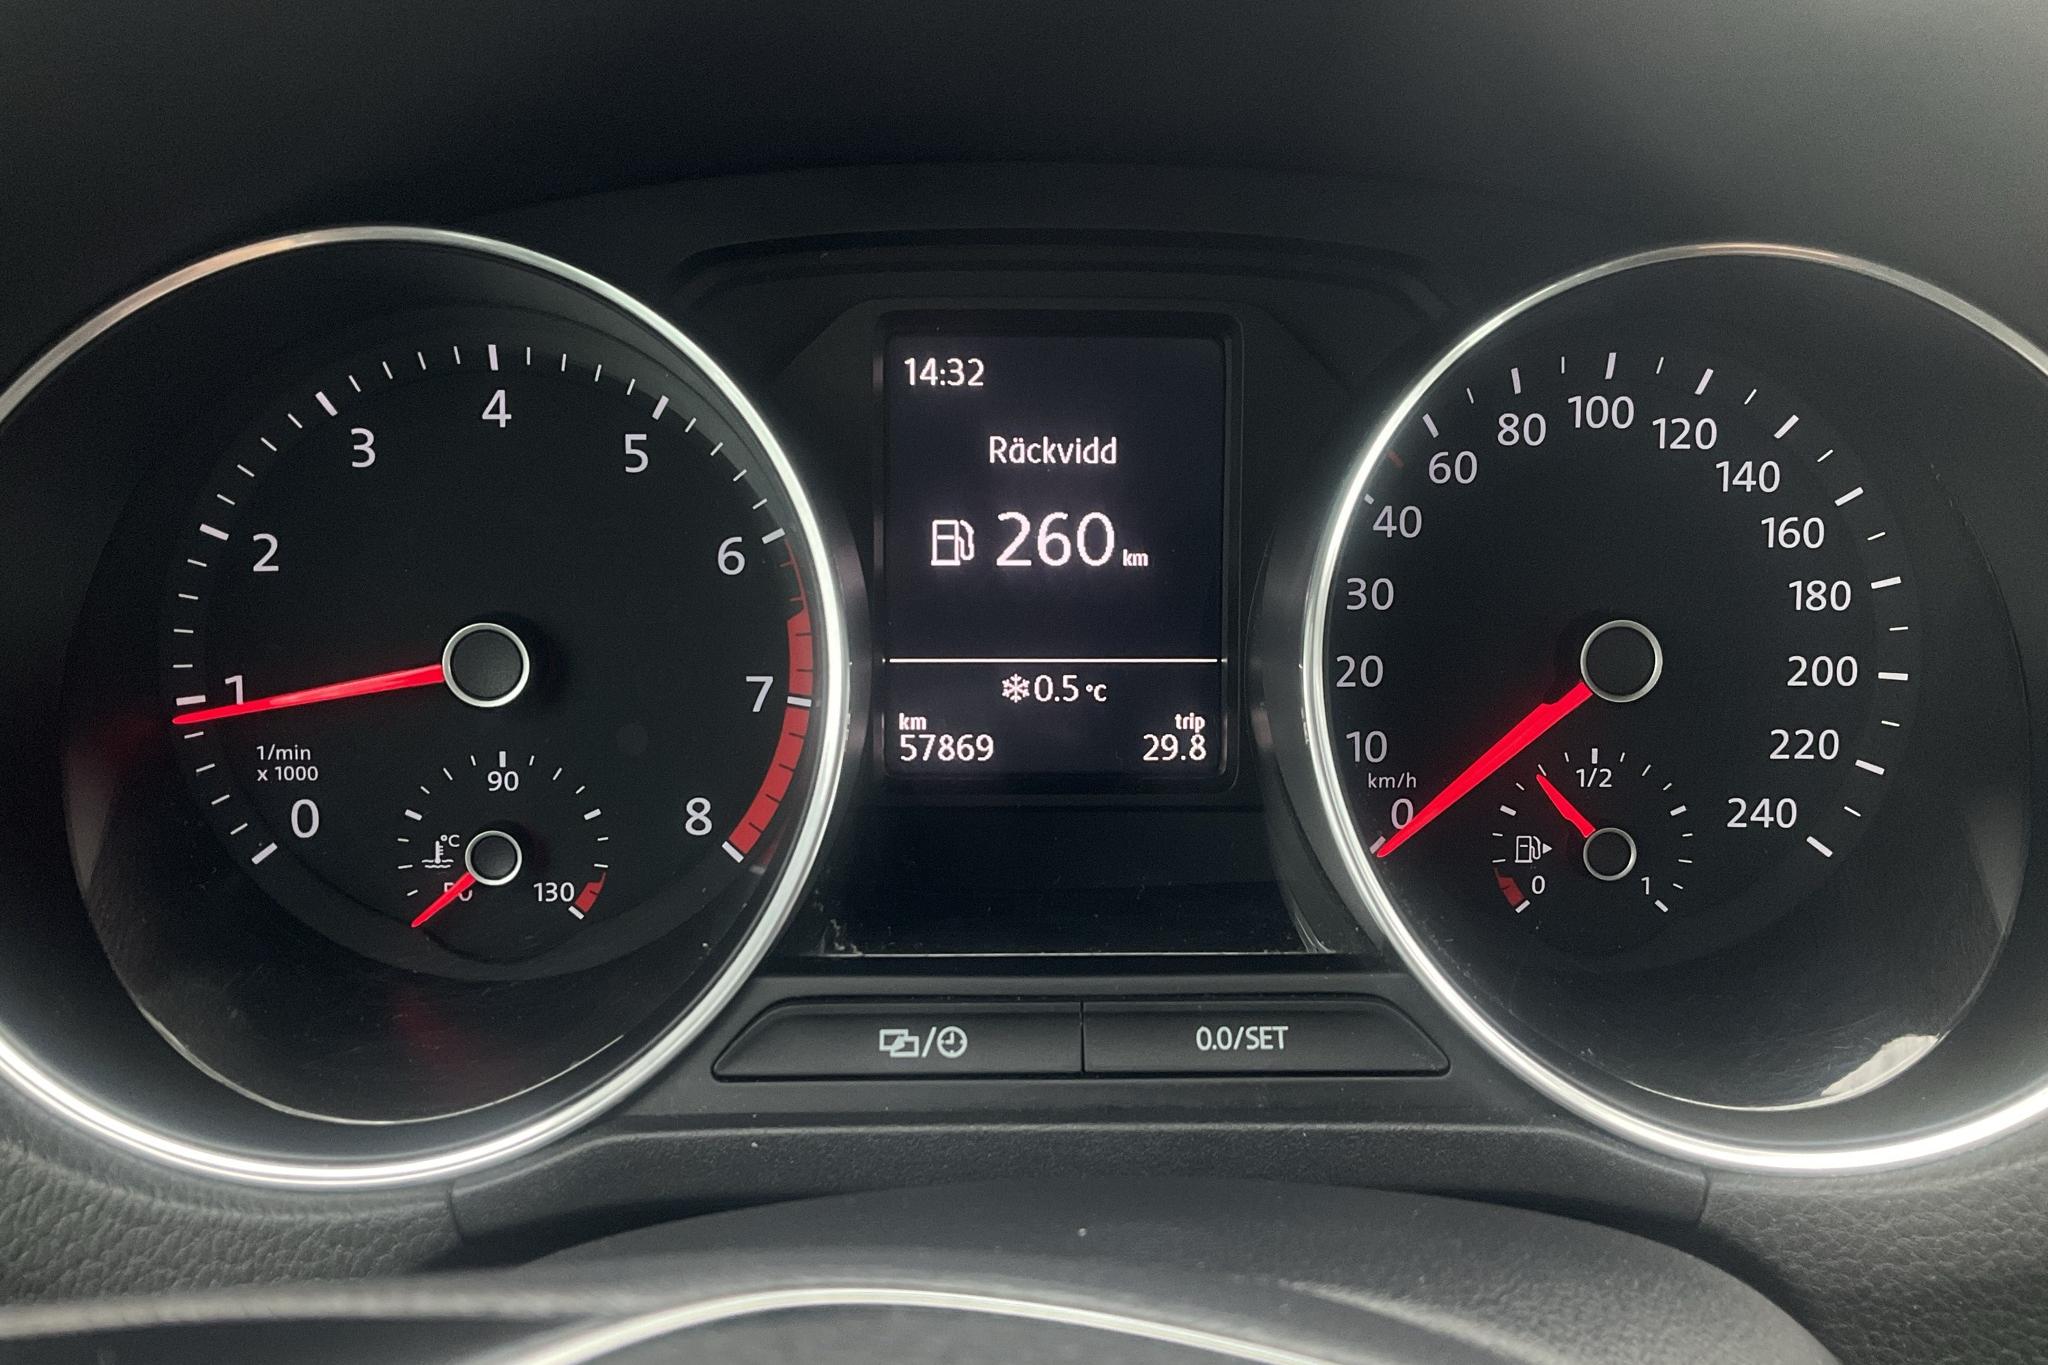 VW Polo 1.2 TSI 5dr (90hk) - 57 860 km - Manual - black - 2016